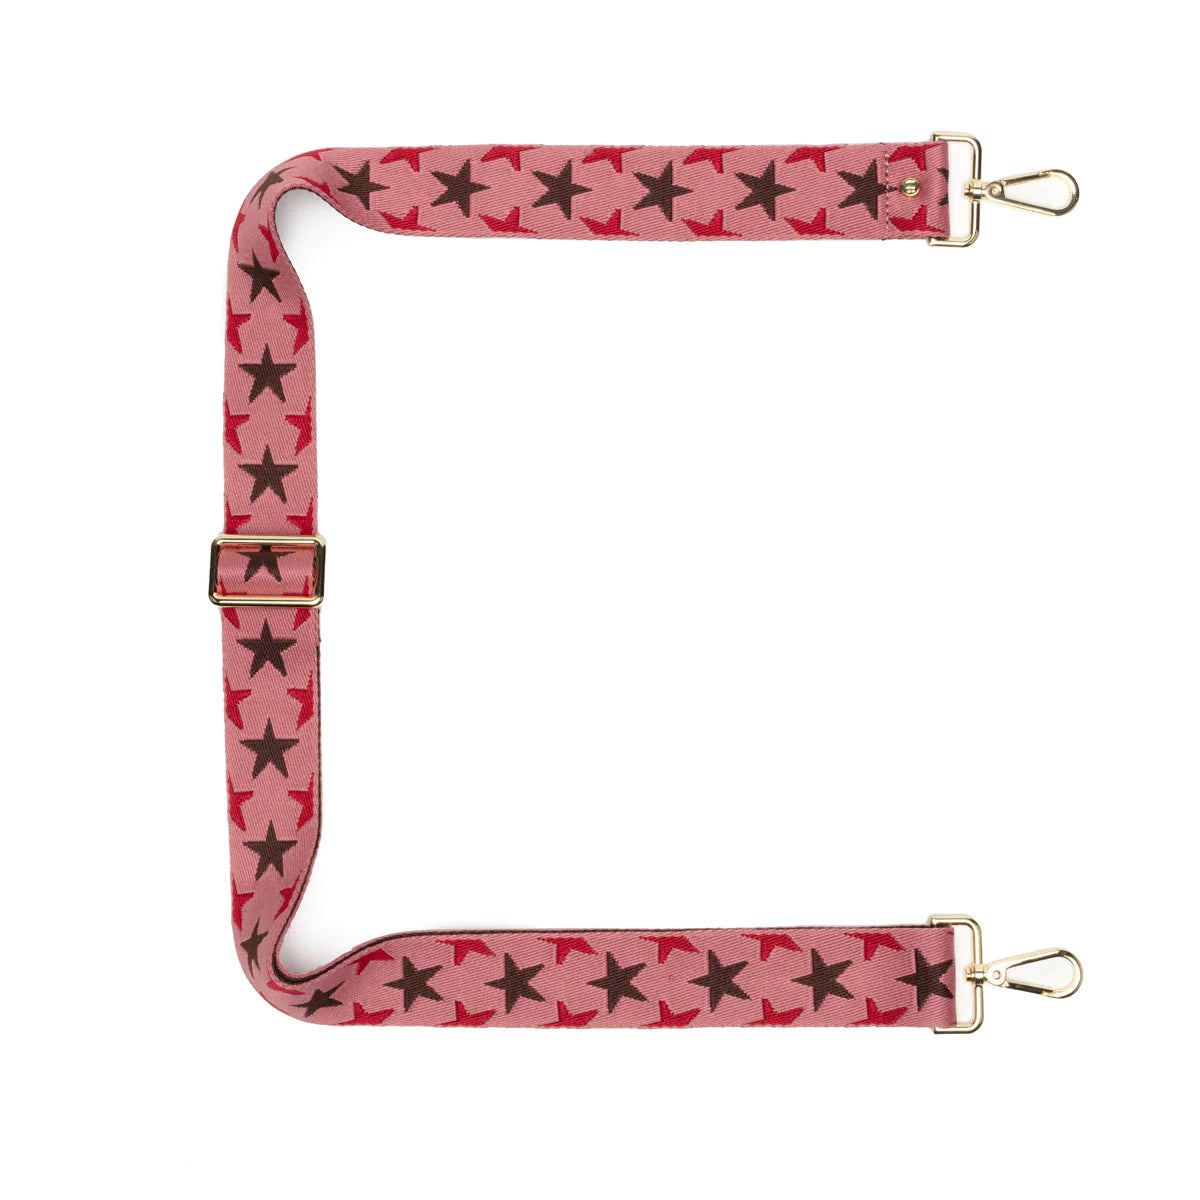 Elie Beaumont Designer PINK STARBURST Adjustable Crossbody Bag Strap (GOLD Fittings)